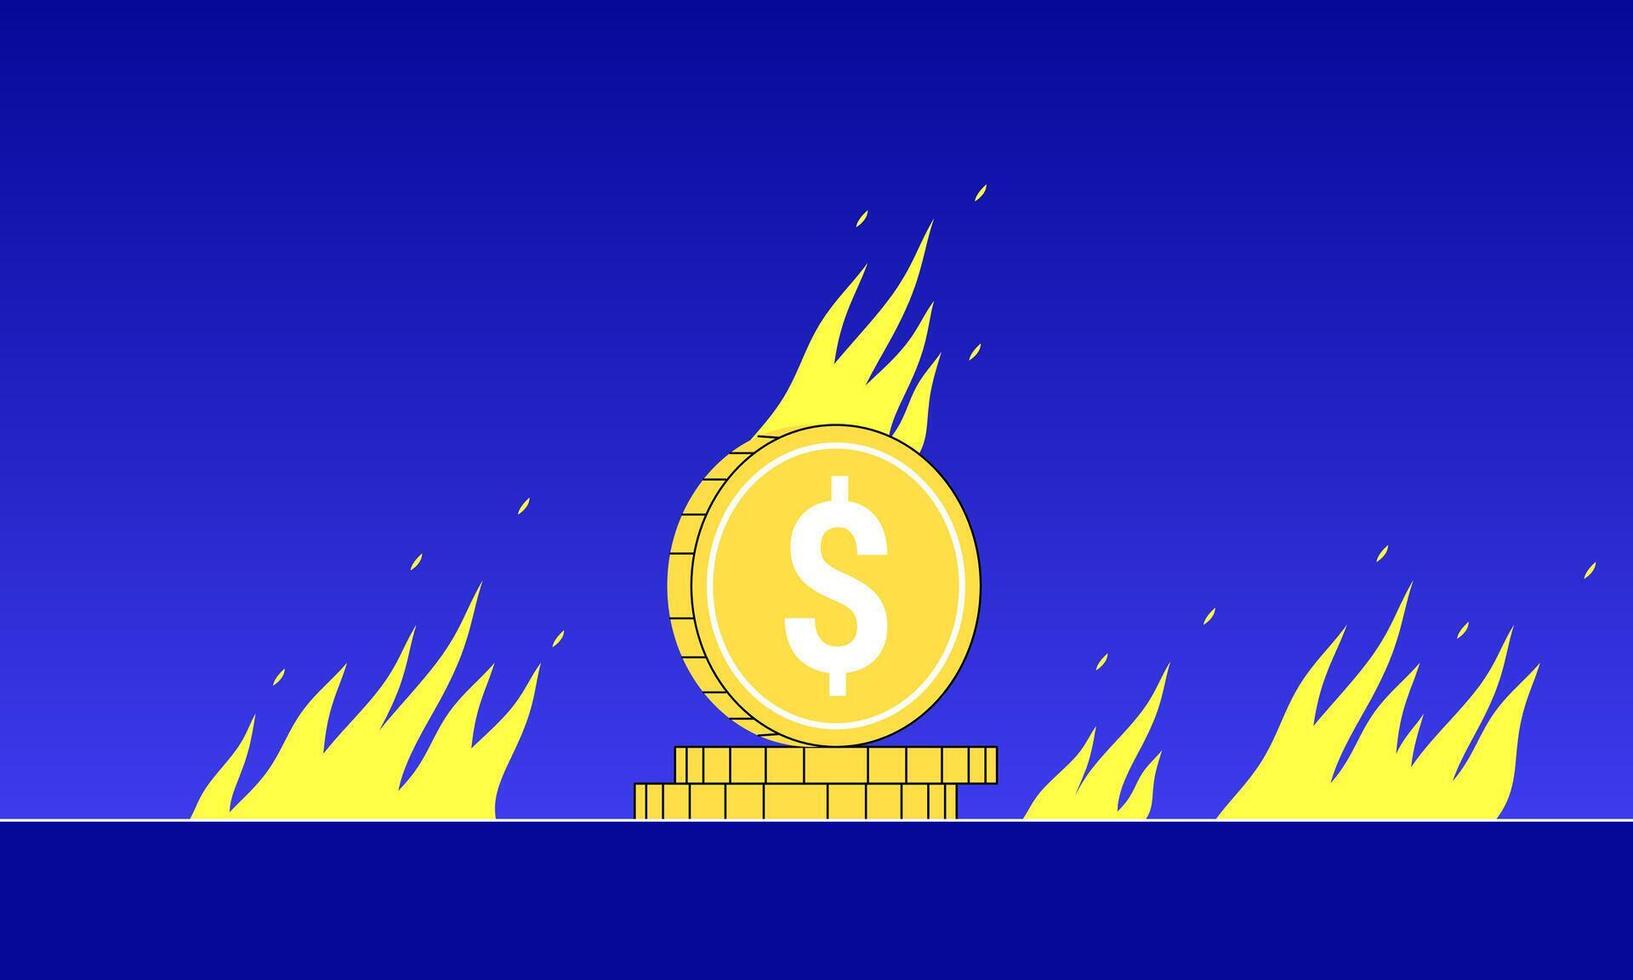 illustration av brinnande mynt symboliserar finansiell förlust, inflation, och finansiell kris vektor